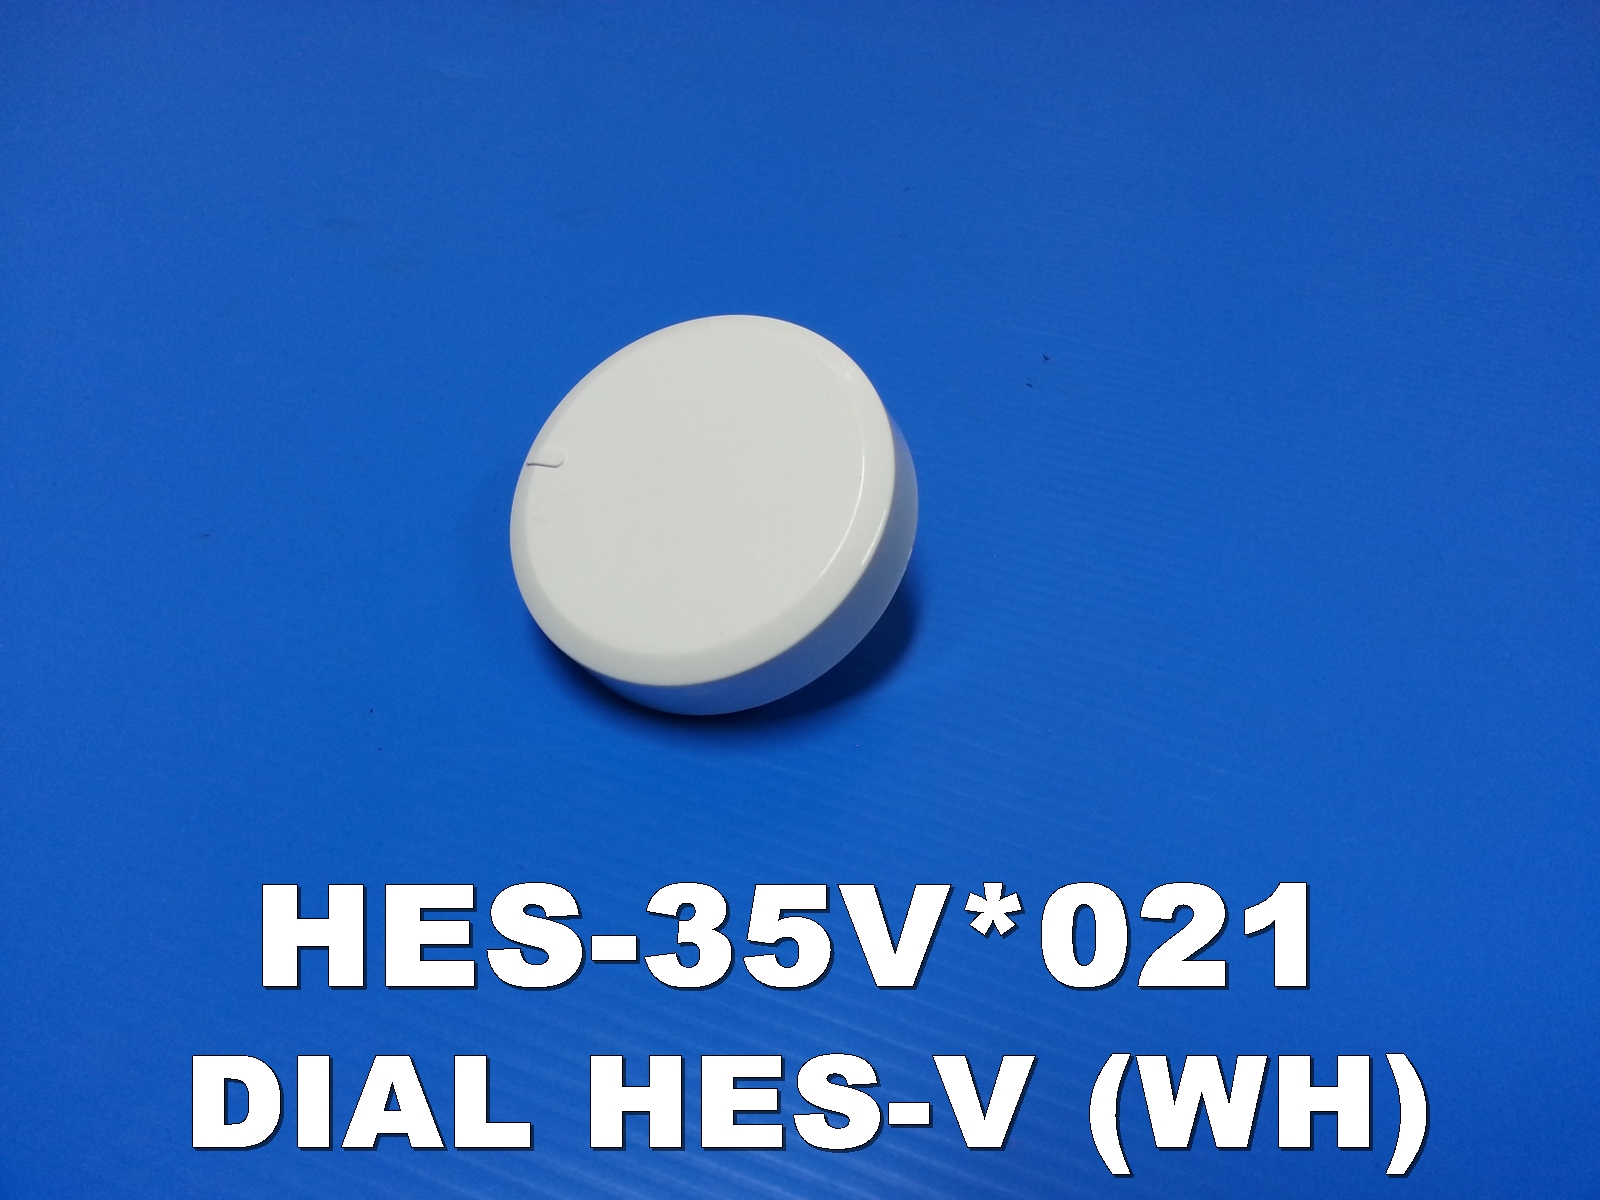 DIAL HES-V(WH) ยี่ห้อHitachi อะไหล่แท้ พาสHES-35V*021